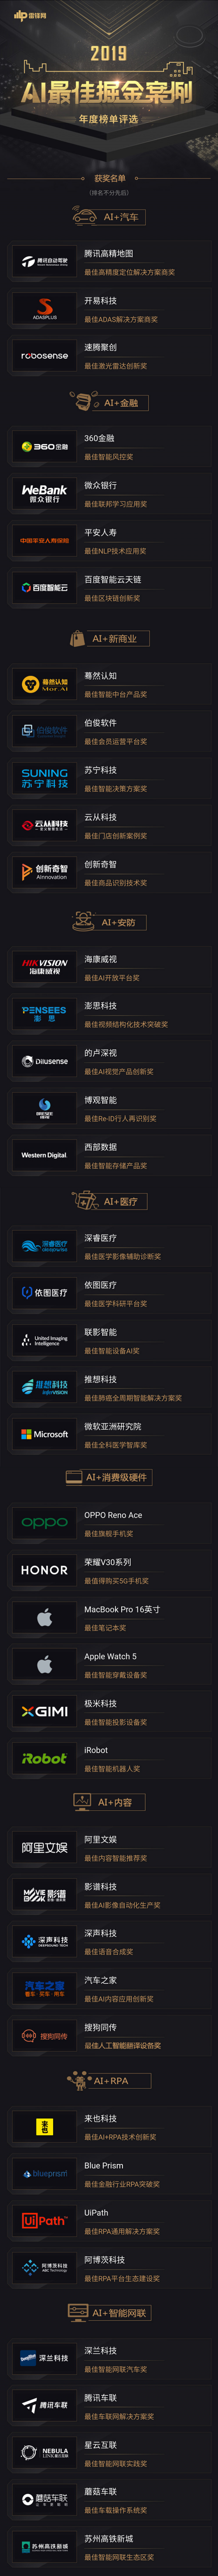 雷锋网 2019「AI 最佳掘金案例年度榜单」正式揭晓